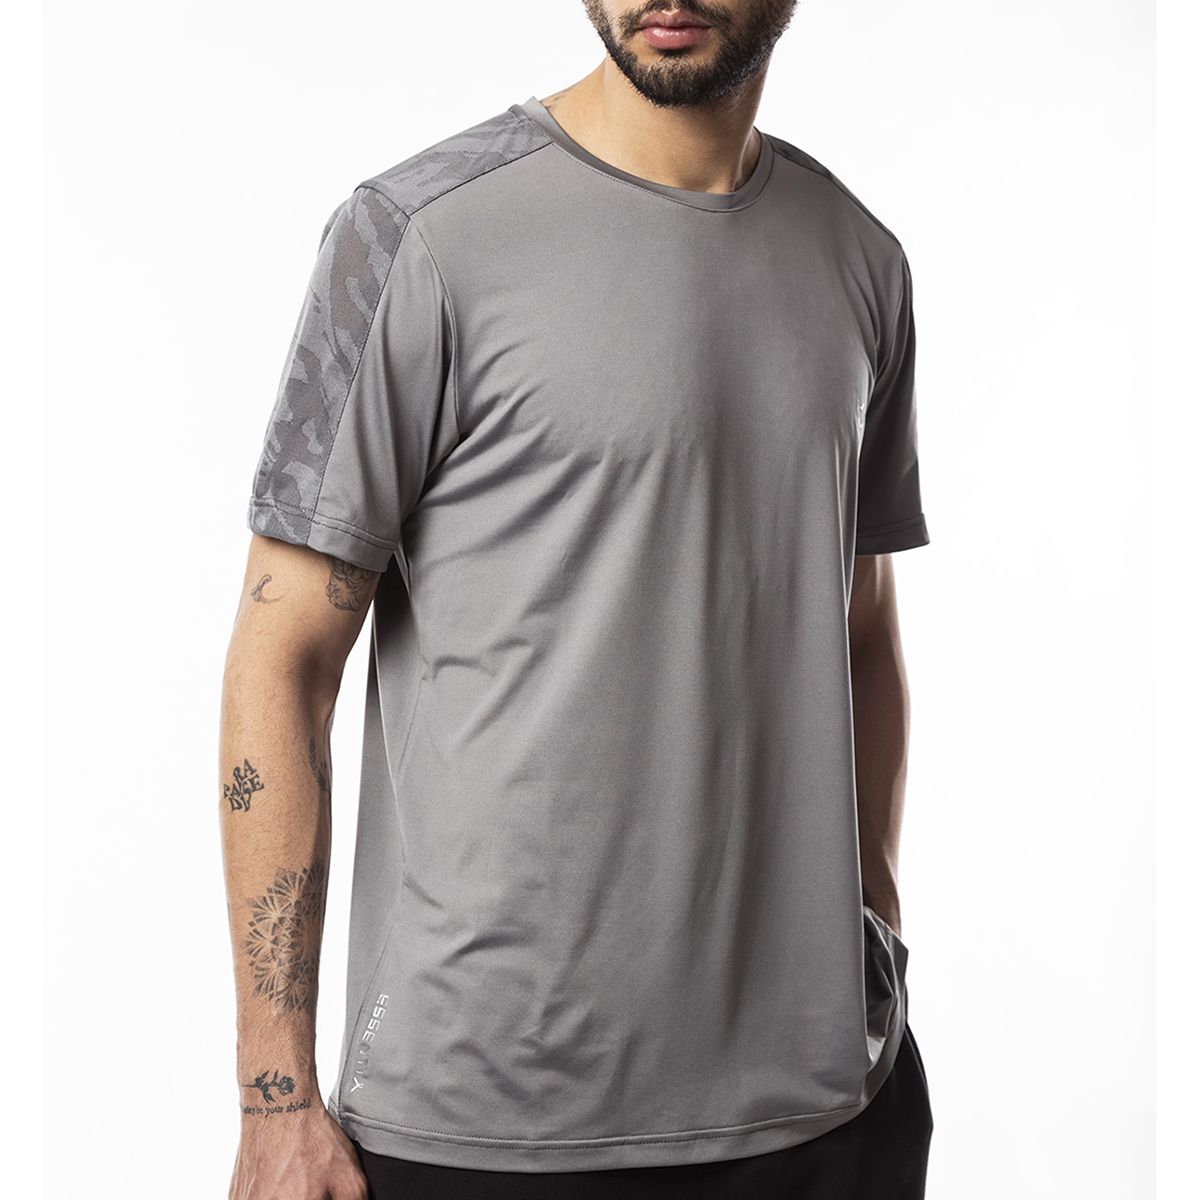 تی شرت آستین کوتاه ورزشی مردانه مل اند موژ مدل M07789-104 -  - 7